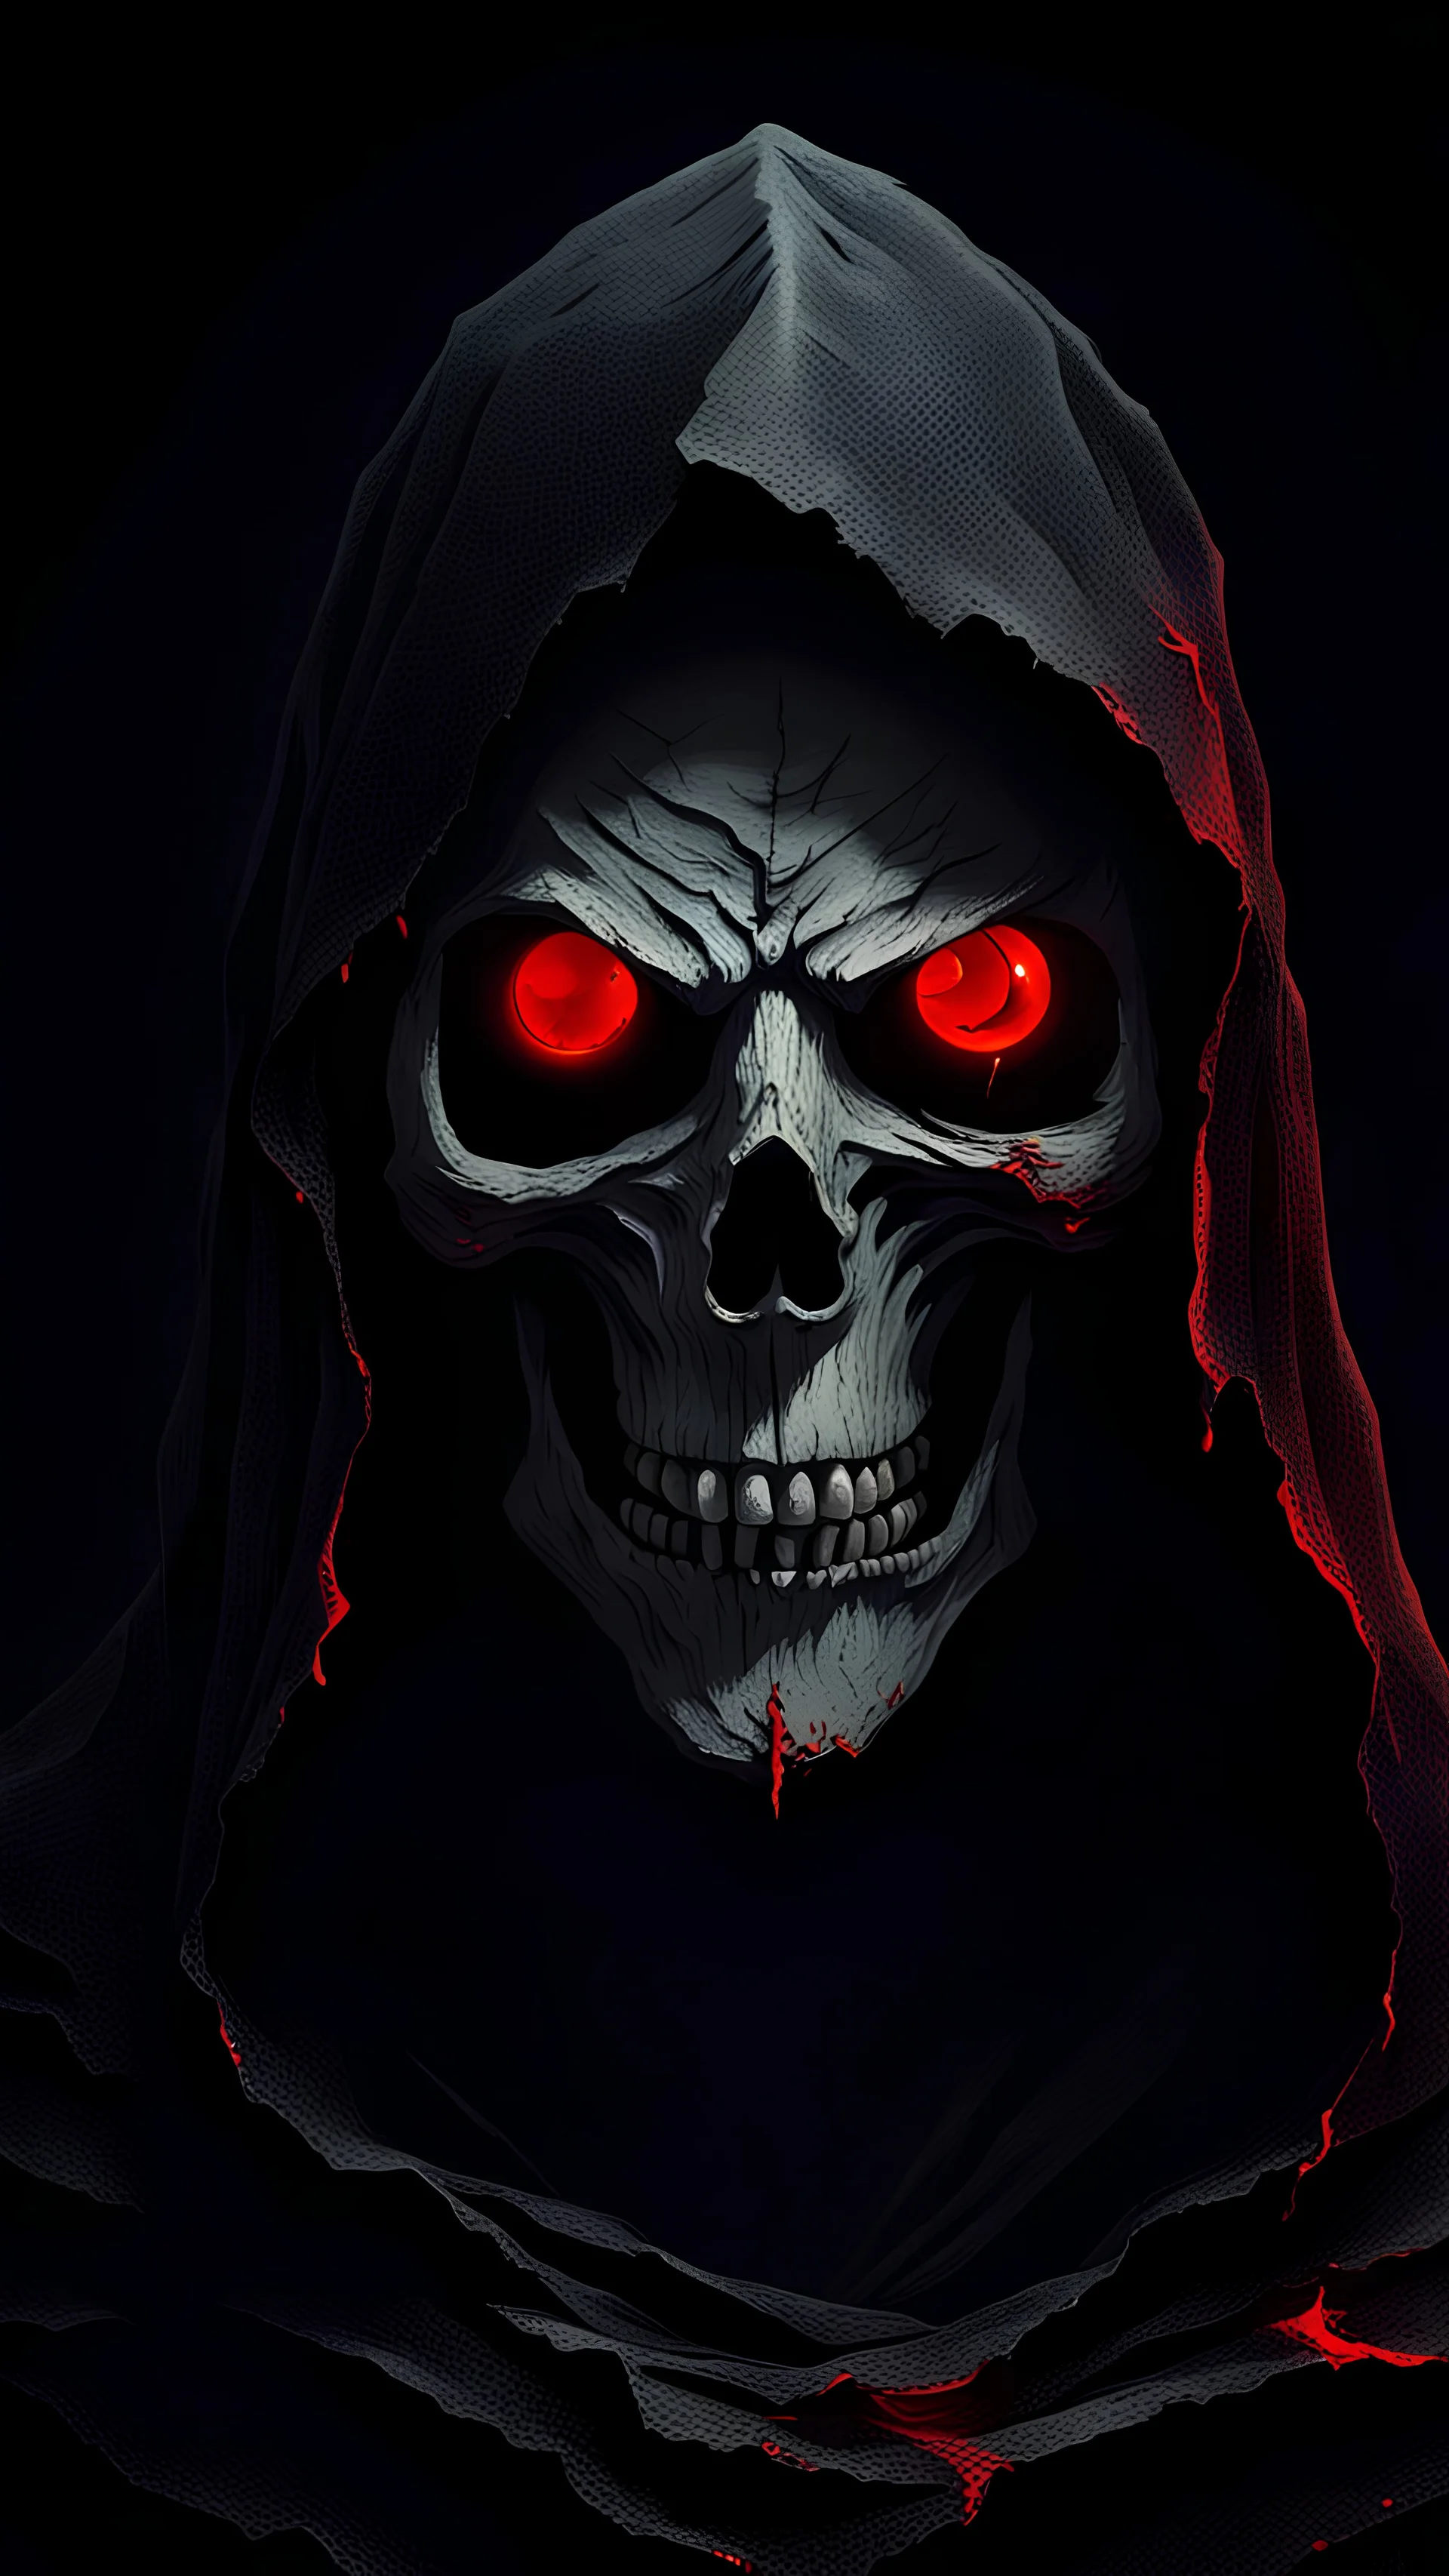 Зловещая фигура в черной рваной мантии с лицом похожим на череп и красными глазами на черном фоне